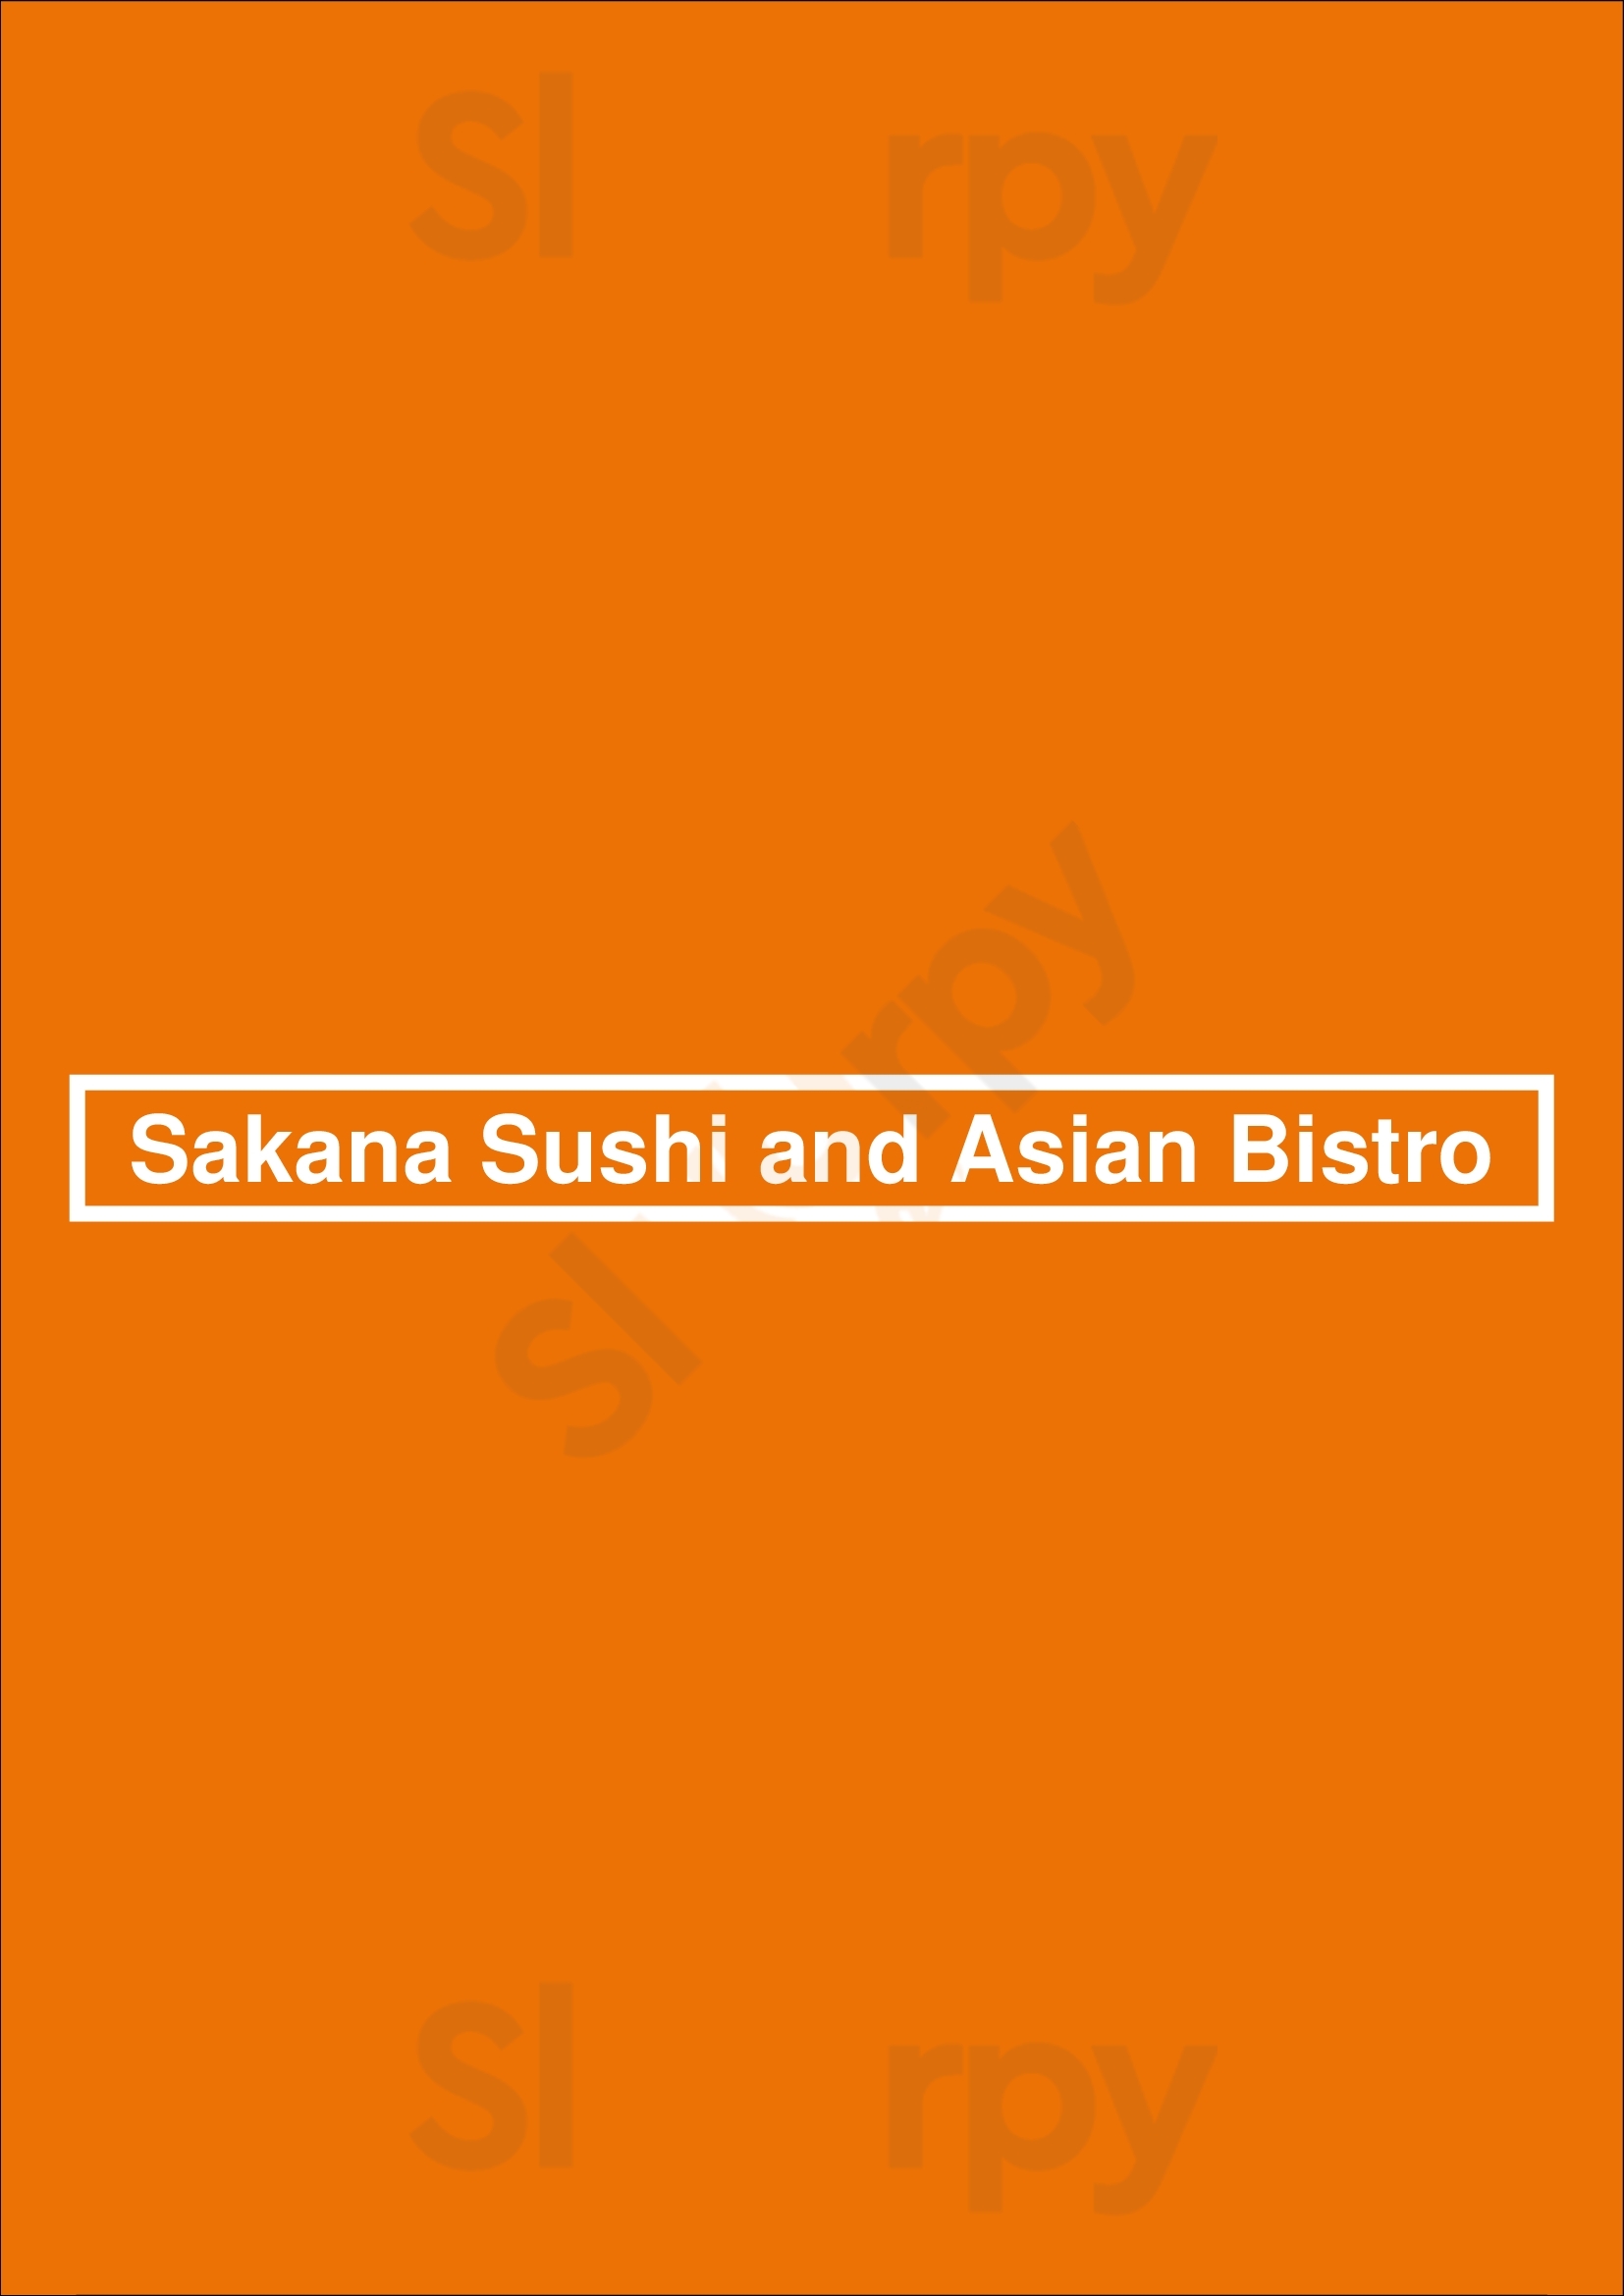 Sakana Sushi And Asian Bistro Saint Paul Menu - 1